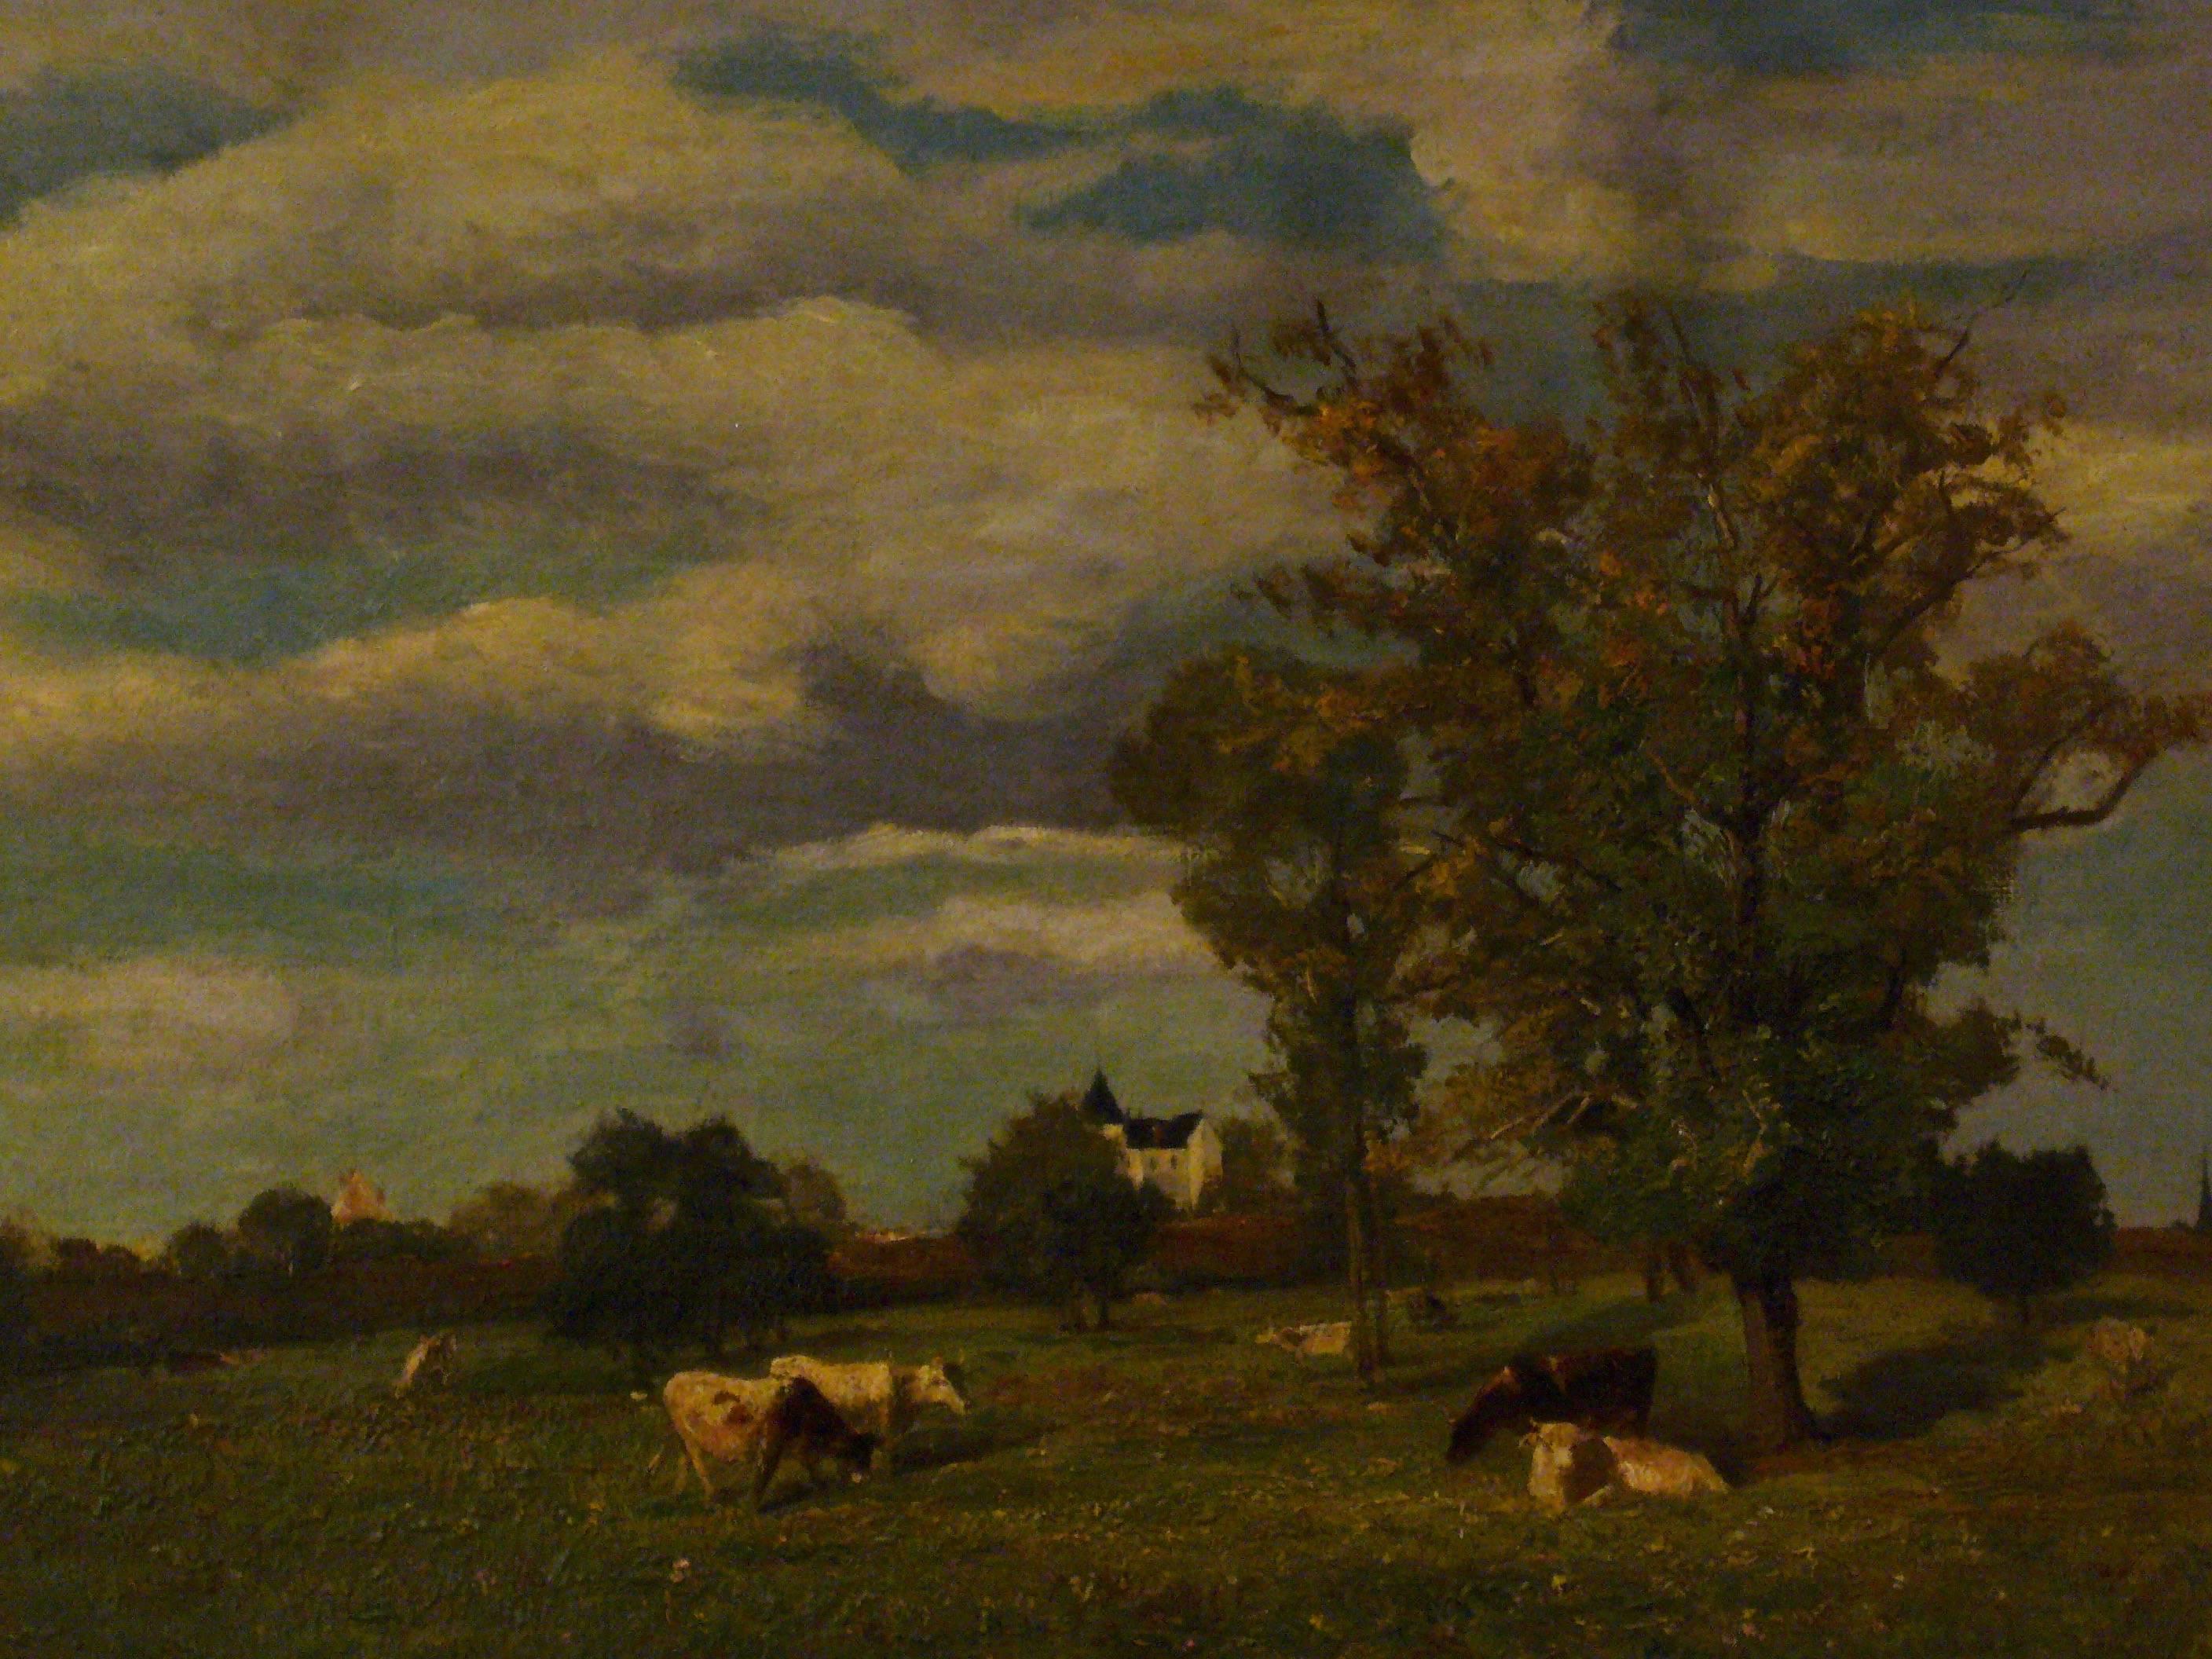 Vaches dans un paysage de printemps près d'un chateau - 19th Century Landscape  For Sale 2